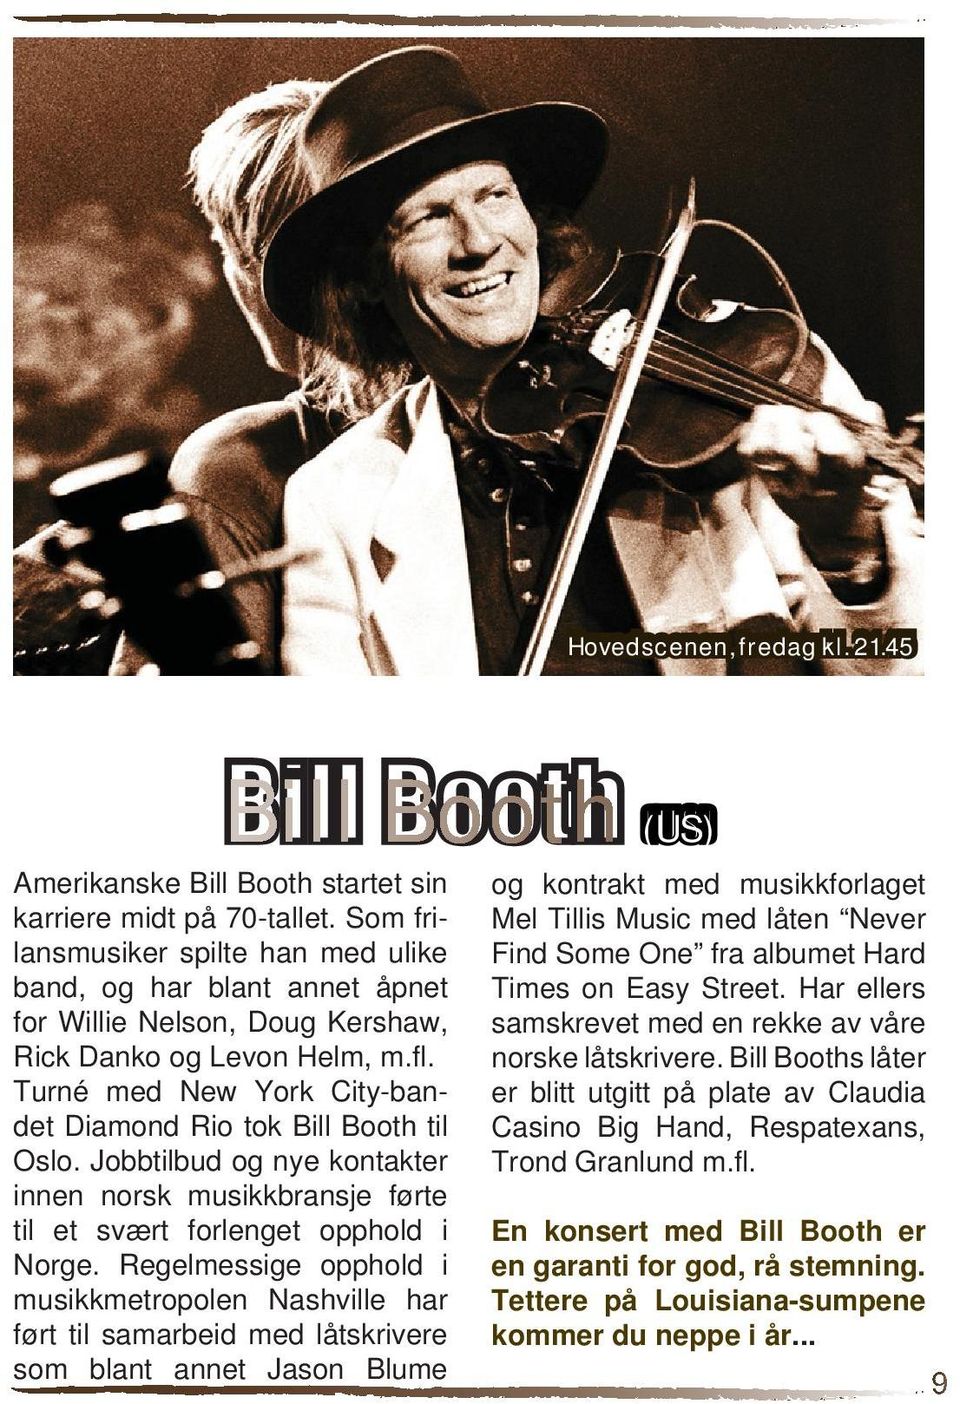 Turné med New York City-bandet Diamond Rio tok Bill Booth til Oslo. Jobbtilbud og nye kontakter innen norsk musikkbransje førte til et svært forlenget opphold i Norge.